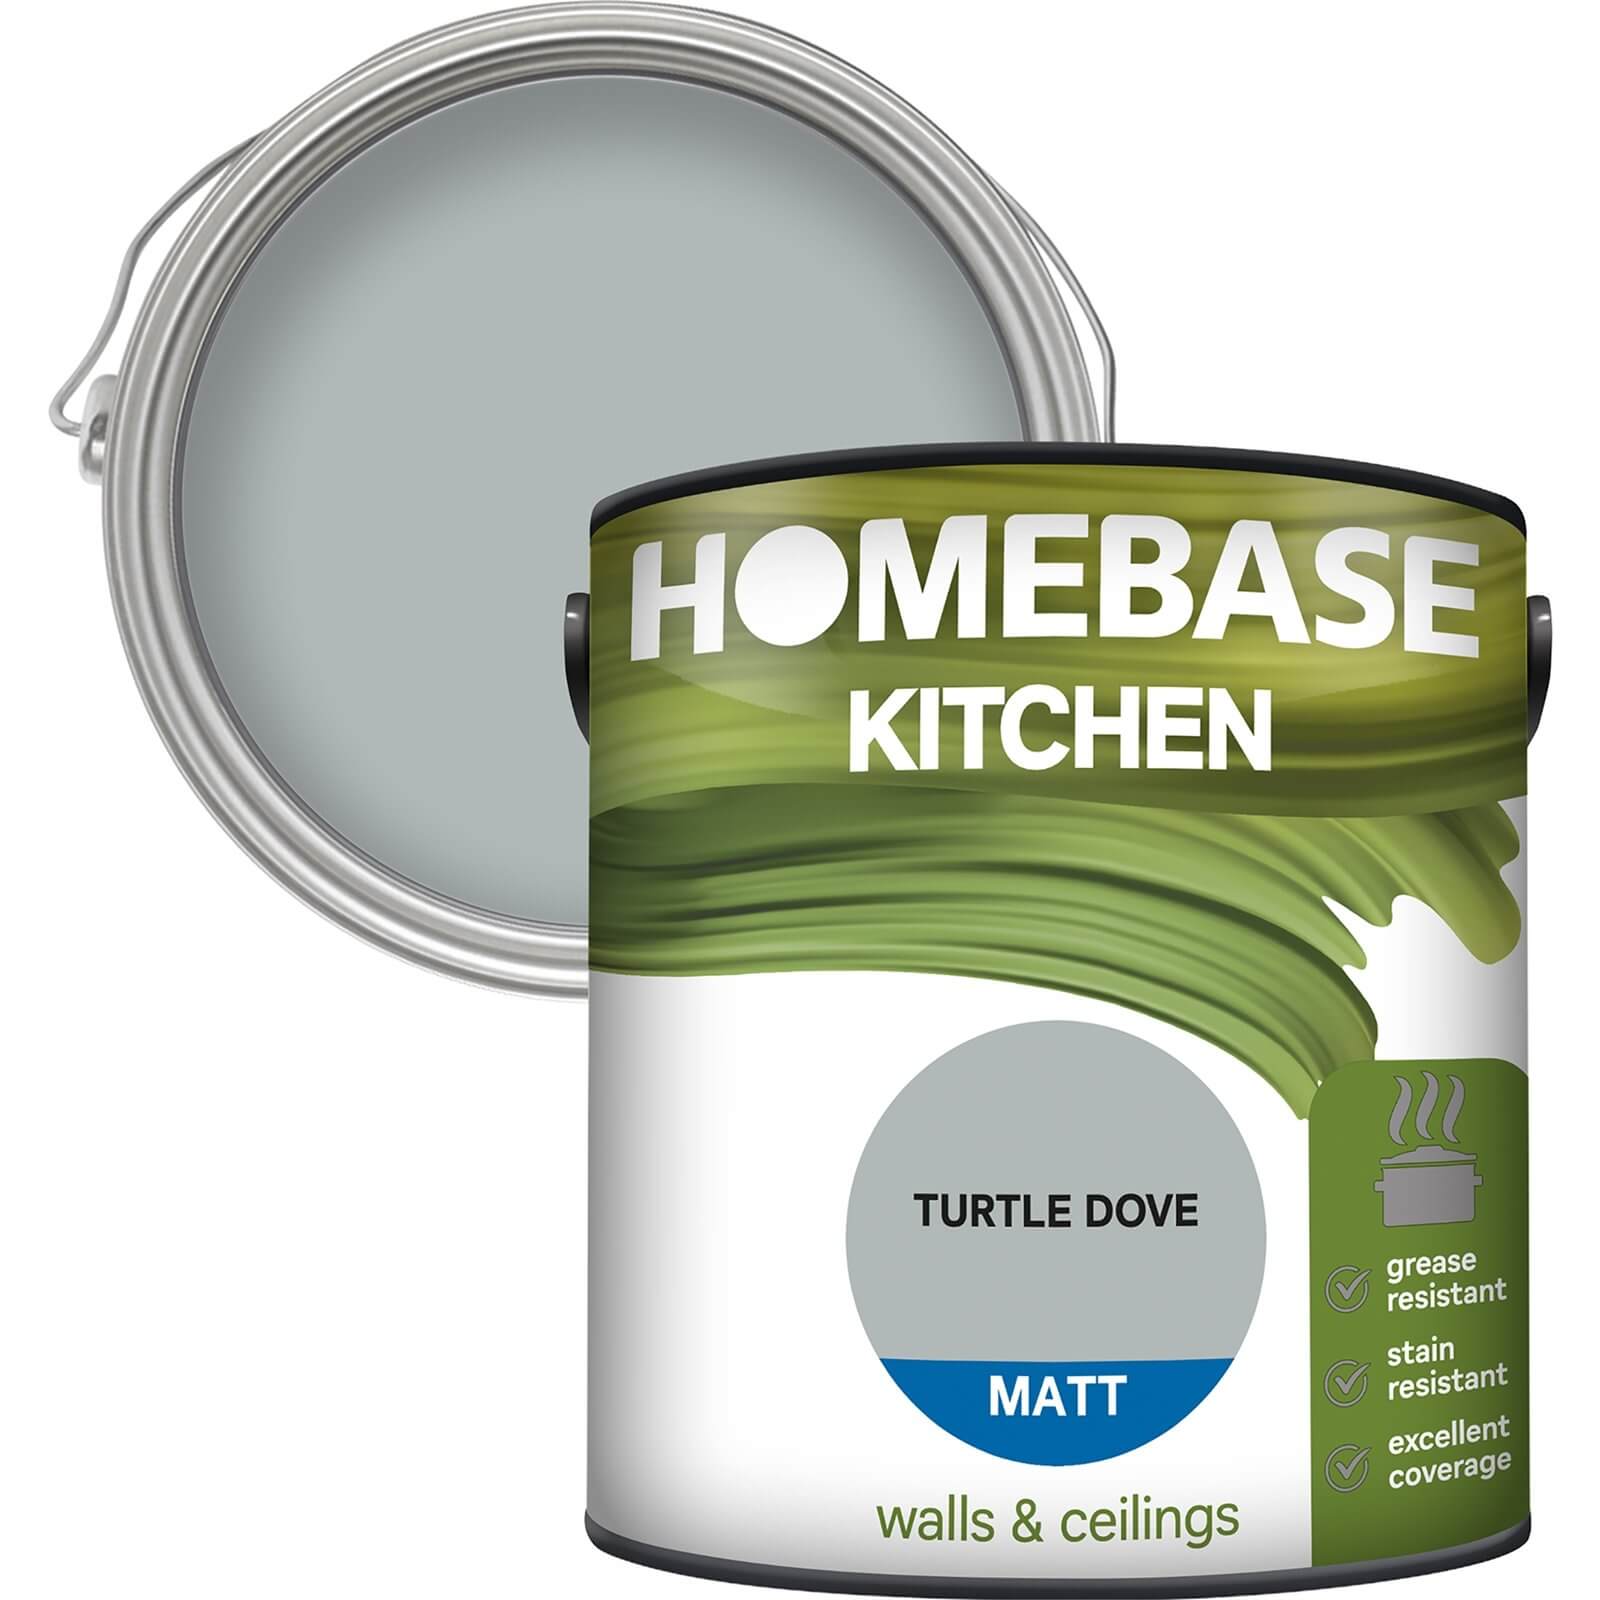 Homebase Kitchen Matt Paint - Turtle Dove 2.5L